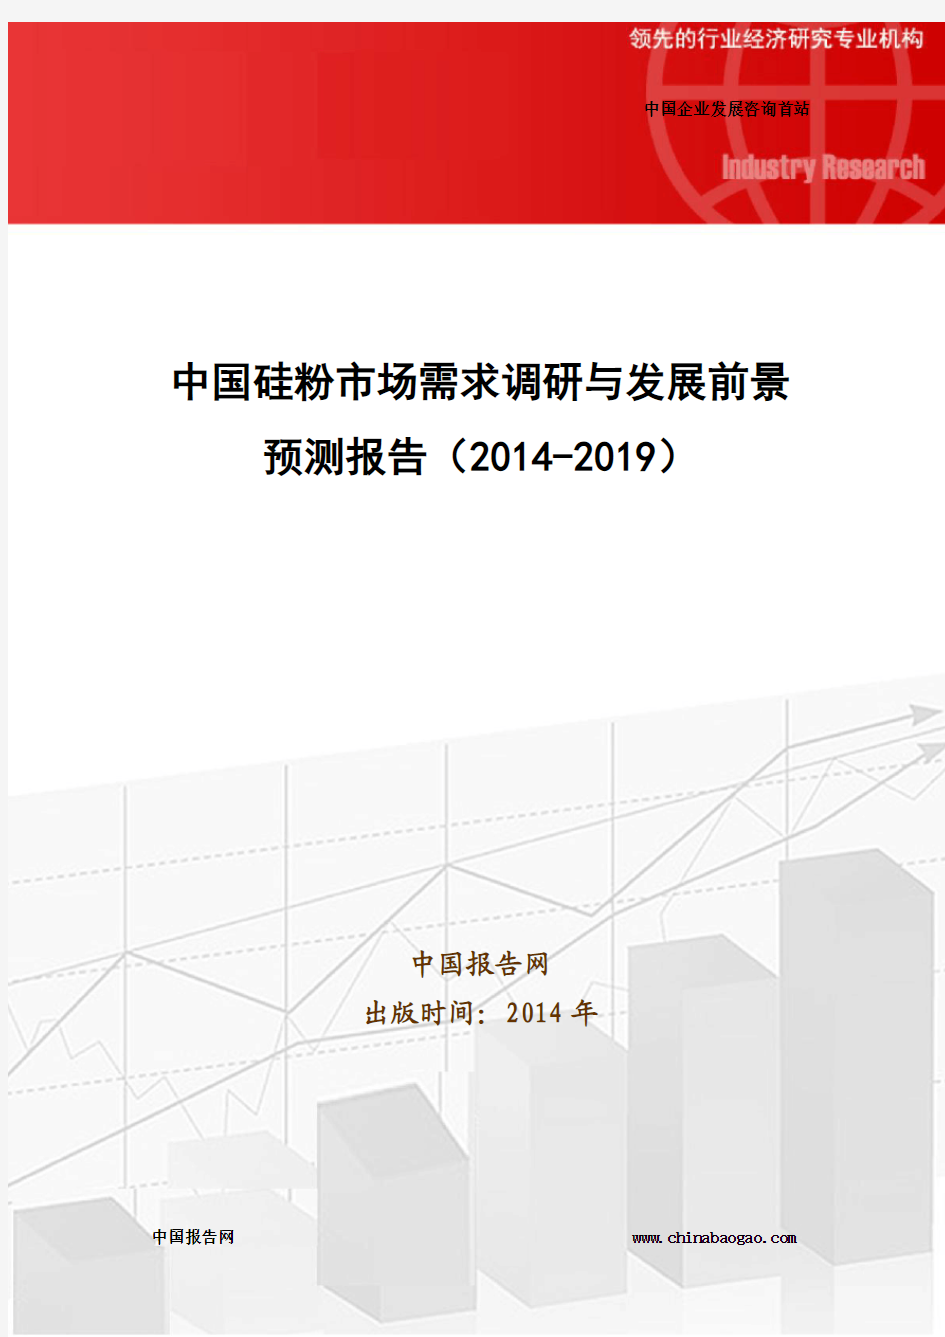 中国硅粉市场需求调研与发展前景预测报告(2014-2019)